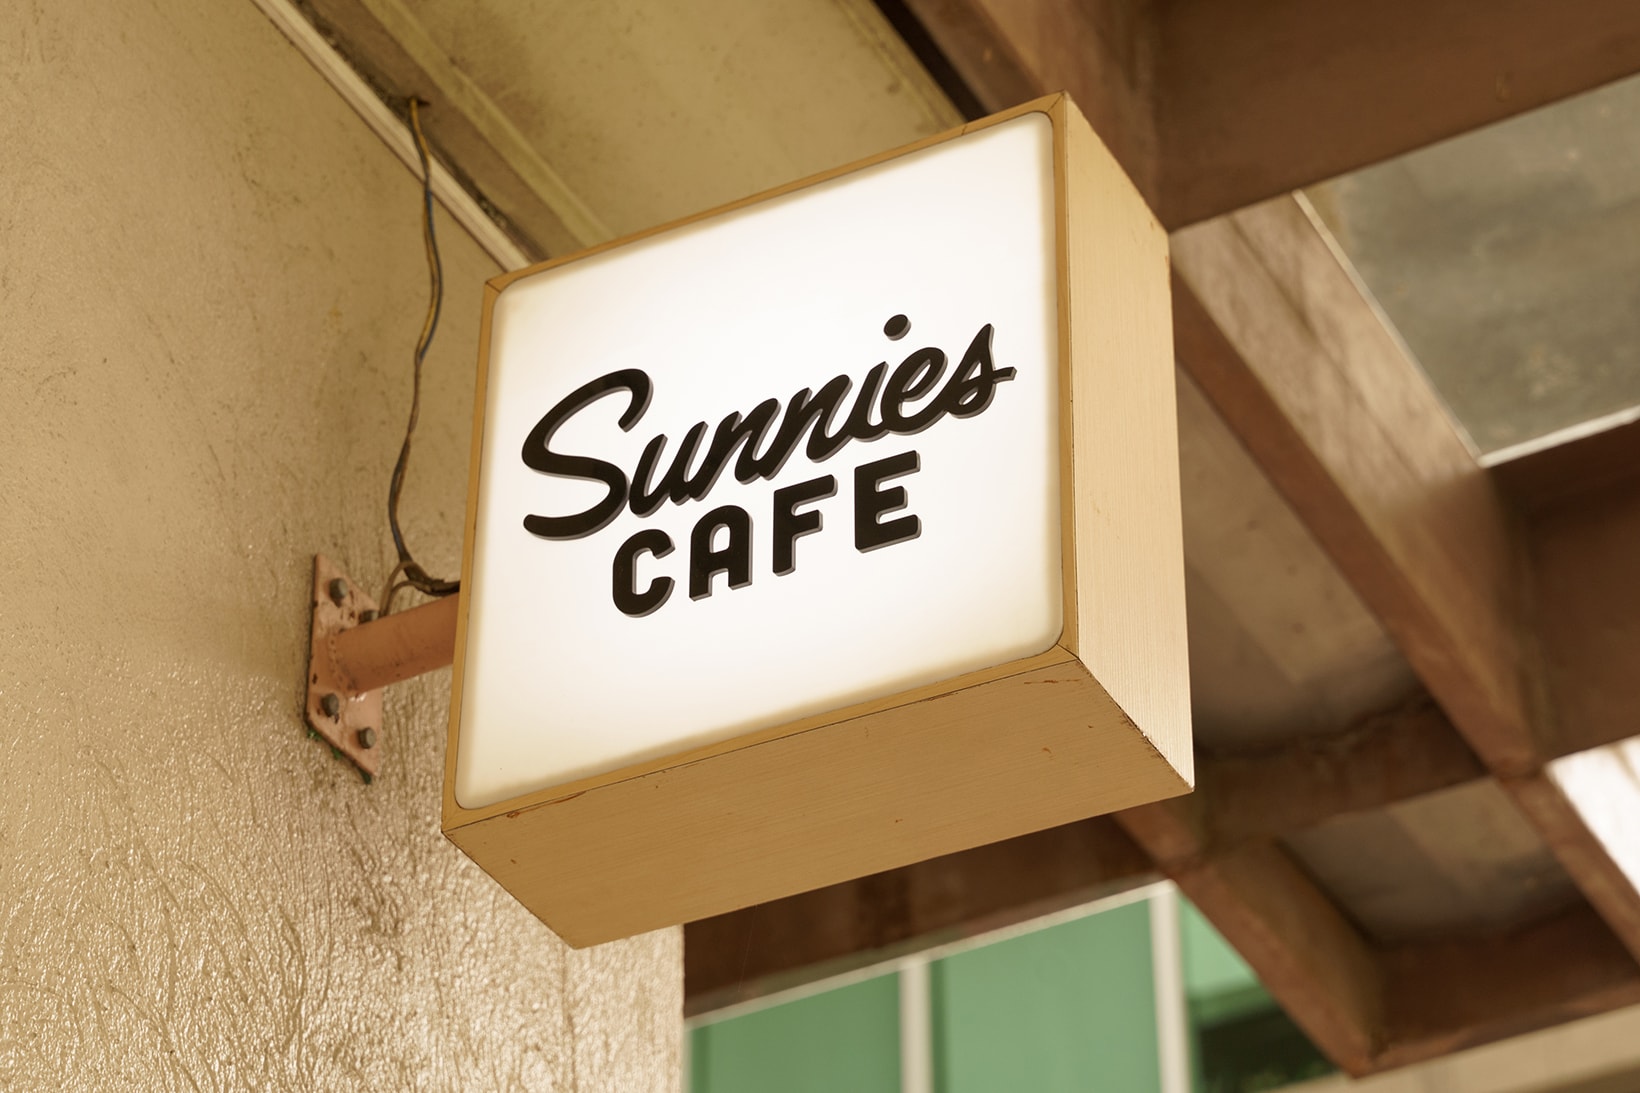 sunnies cafe brunch manila philippines bgc restaurants